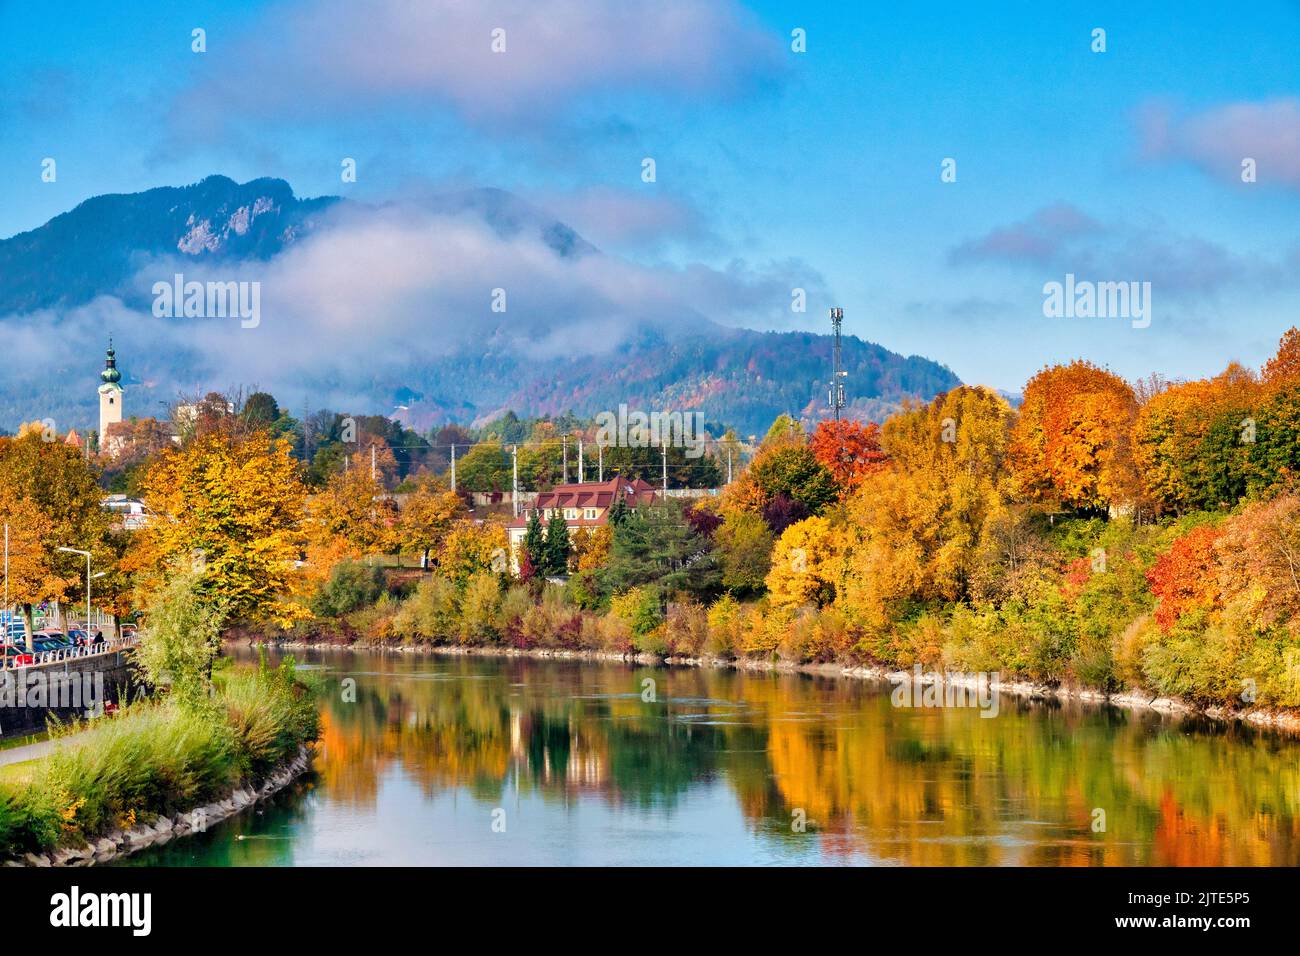 Autumn foliage on the banks of the river Drau, Villach, Austria Stock Photo